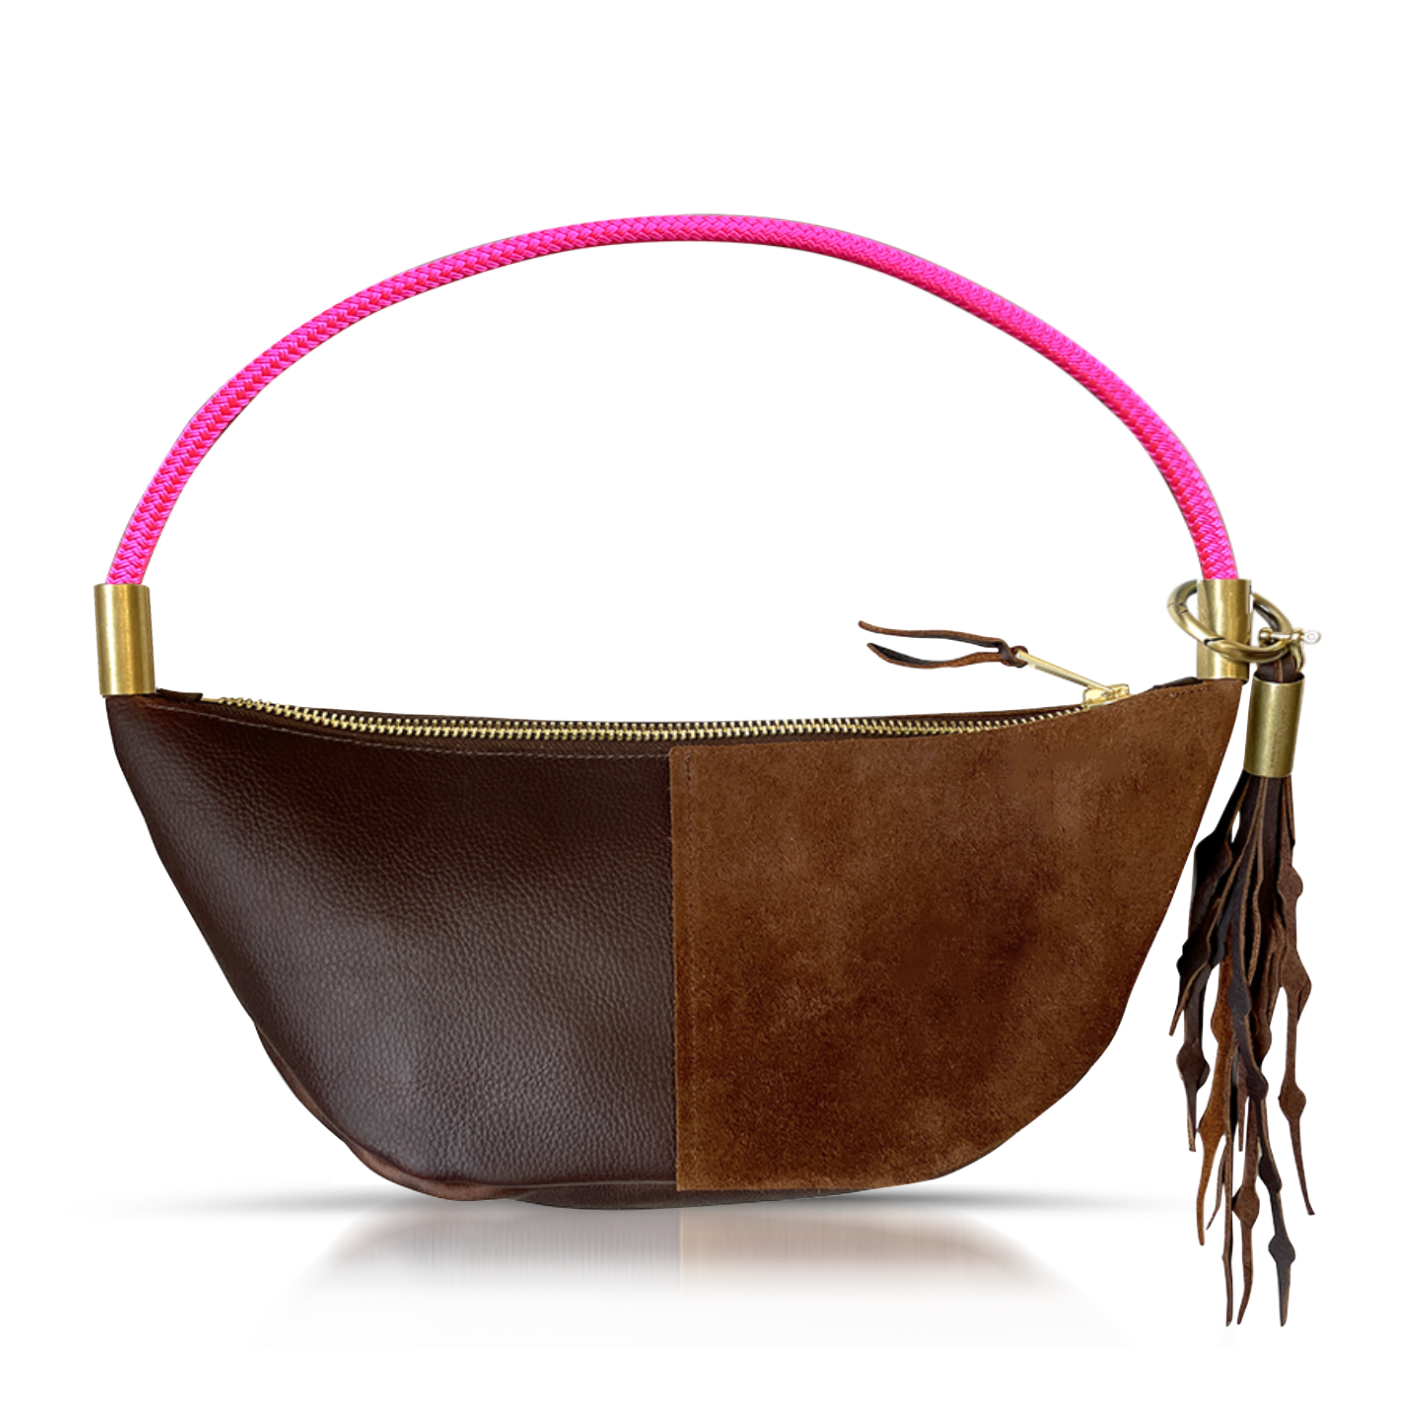 Buy Wholesale China 2021 New Ladies Crossbody Ny Purse Handbags